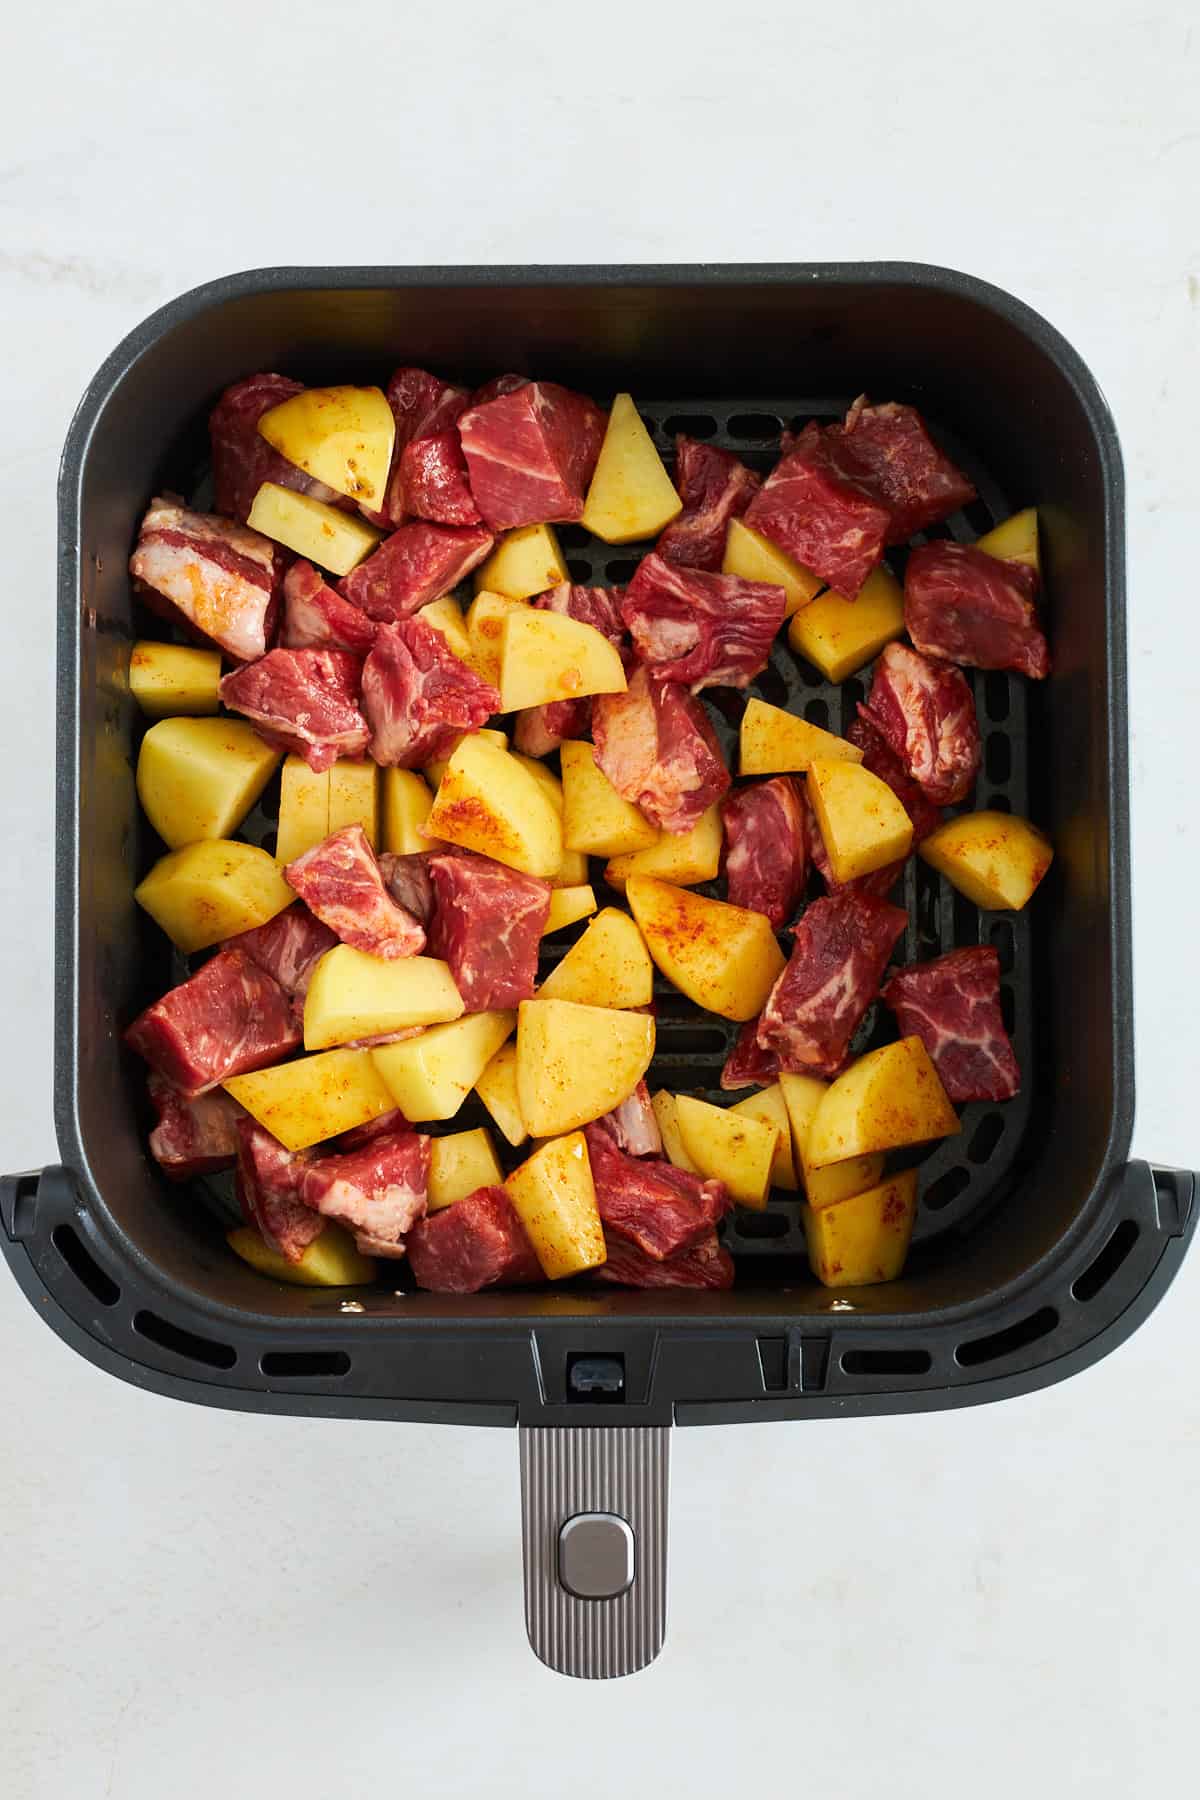 Rohes Steak und Kartoffeln in einer Heißluftfritteuse. 